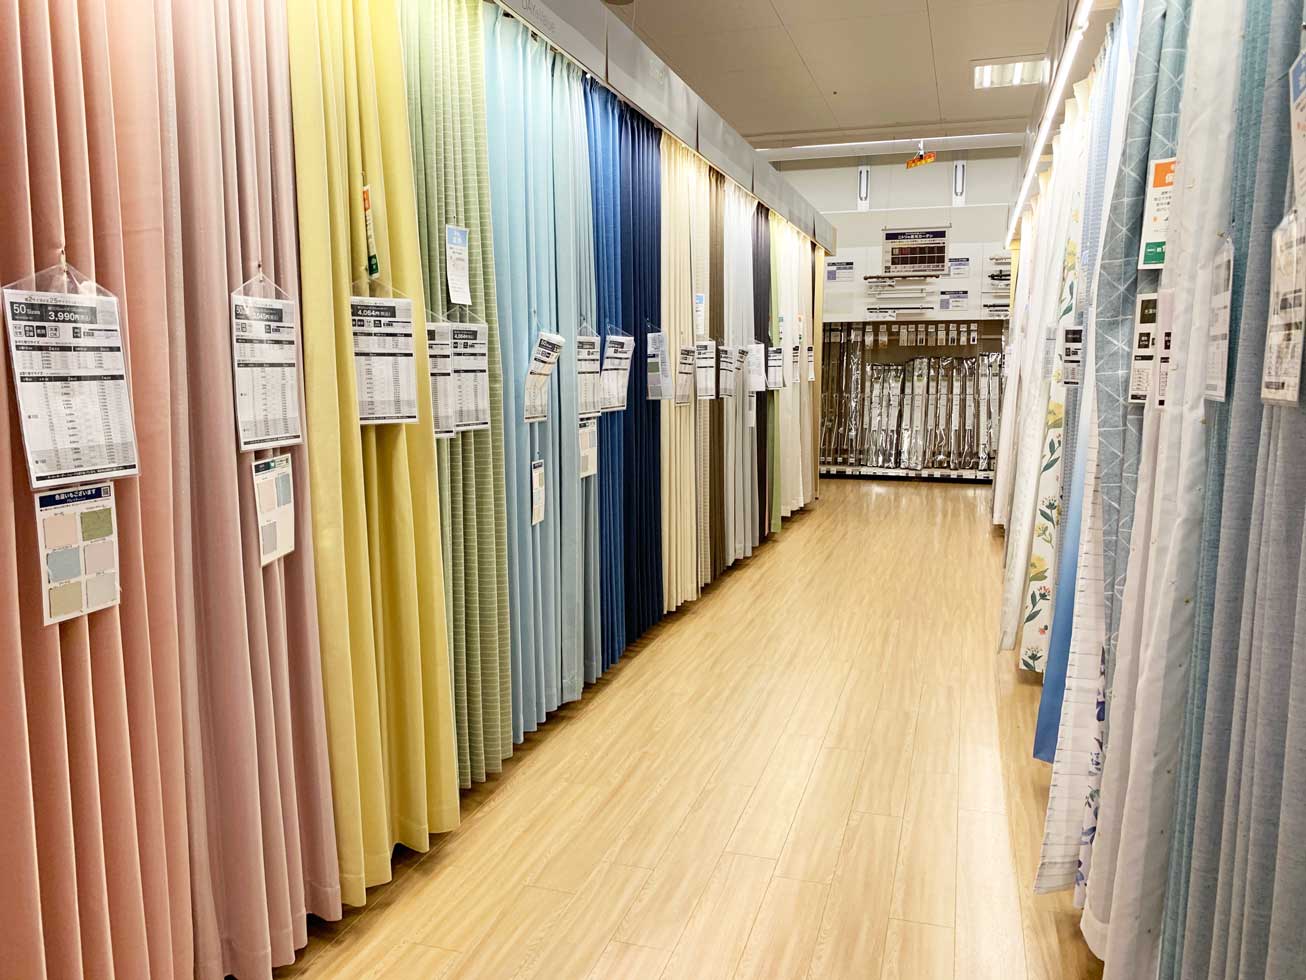 すぐにカーテンが欲しい方向け、既製サイズのカーテンの選び方をご紹介